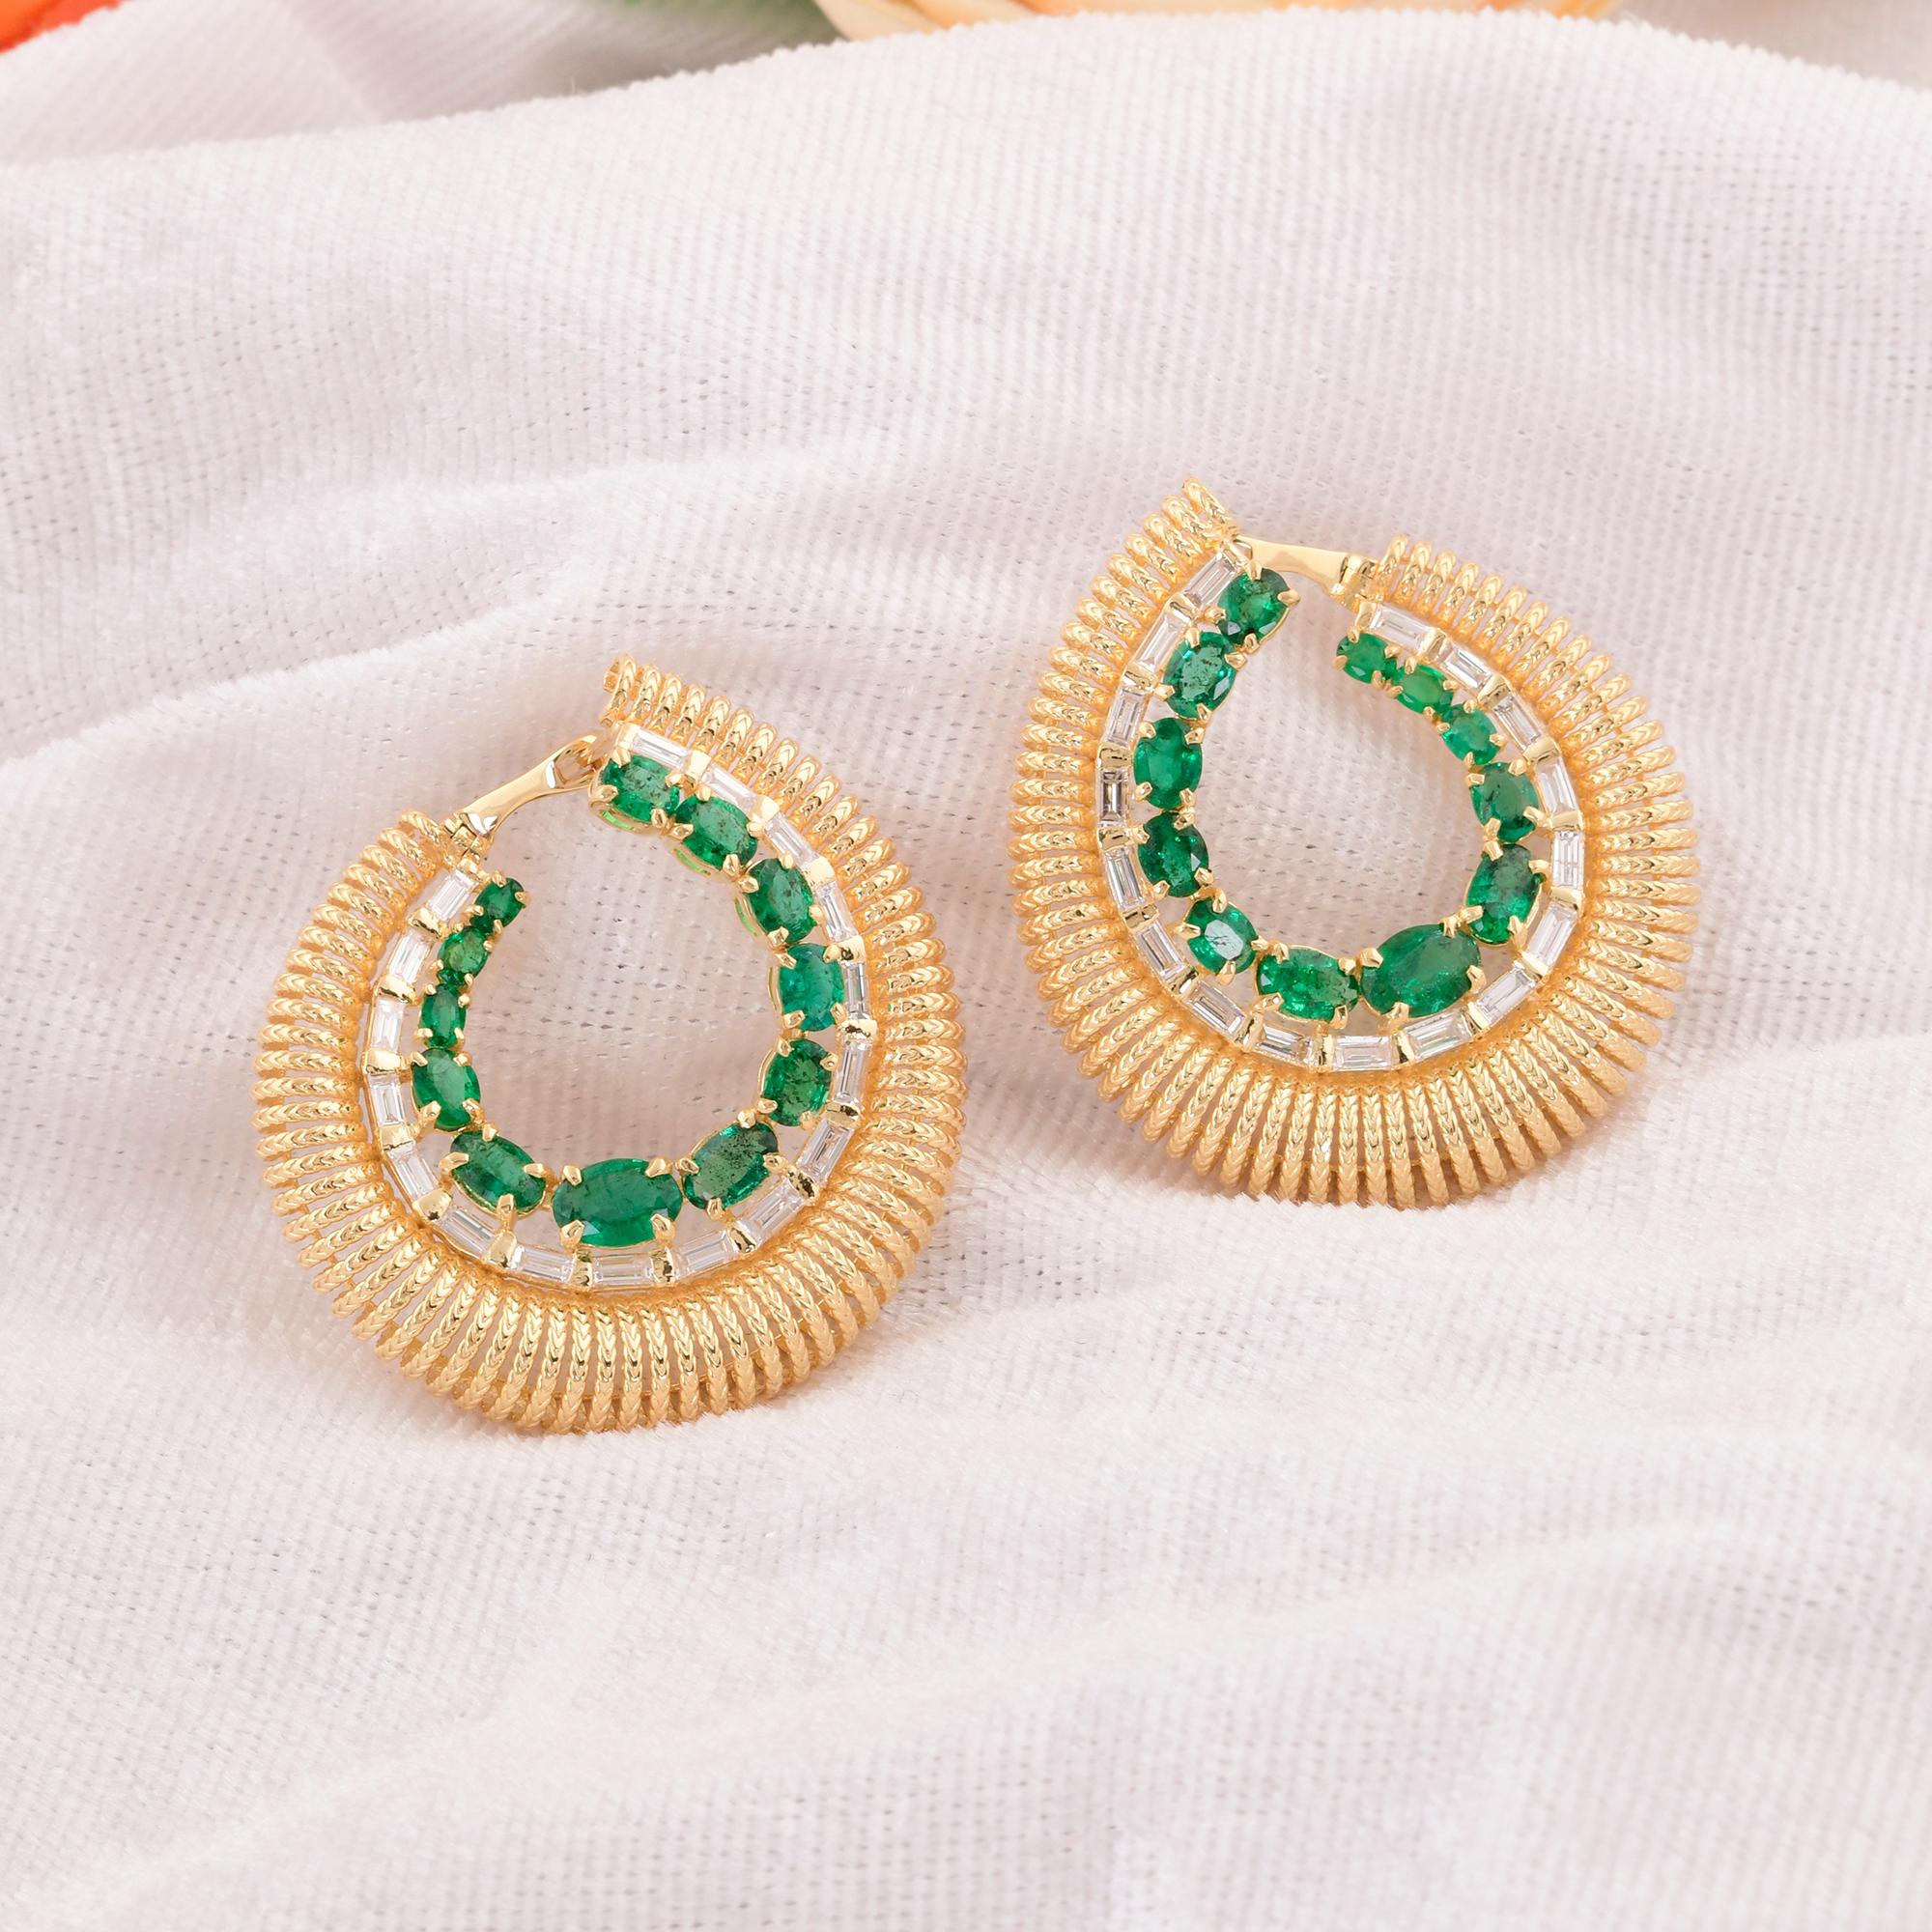 Oval Cut Oval Zambian Emerald Hoop Earrings Baguette Diamond 18 Karat Yellow Gold Jewelry For Sale